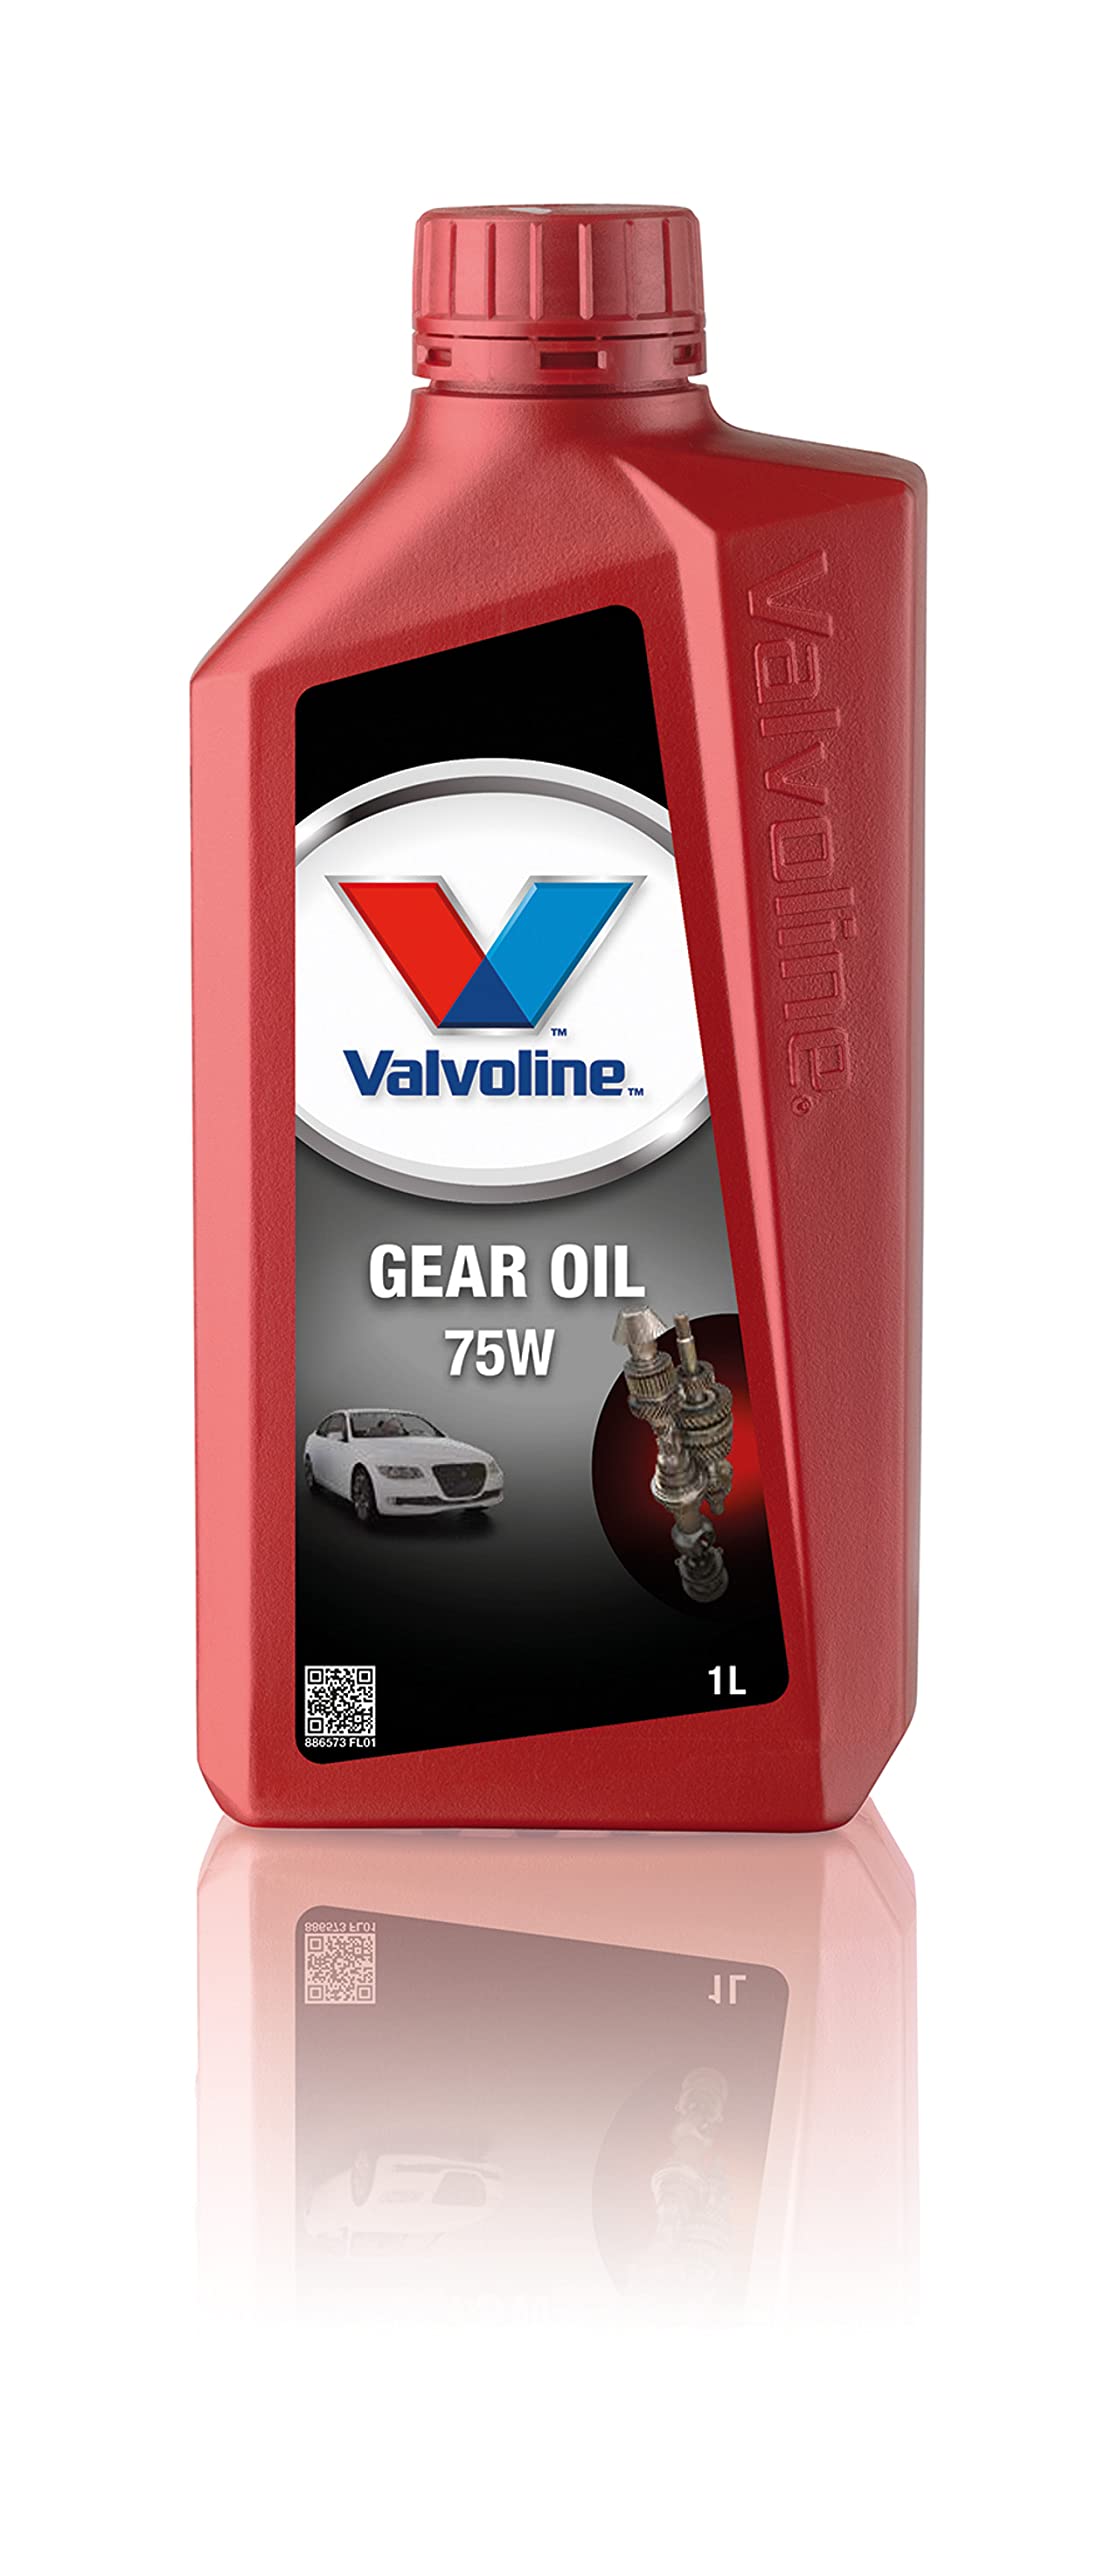 VAL GEAR OIL 75W 1 Liter von Valvoline